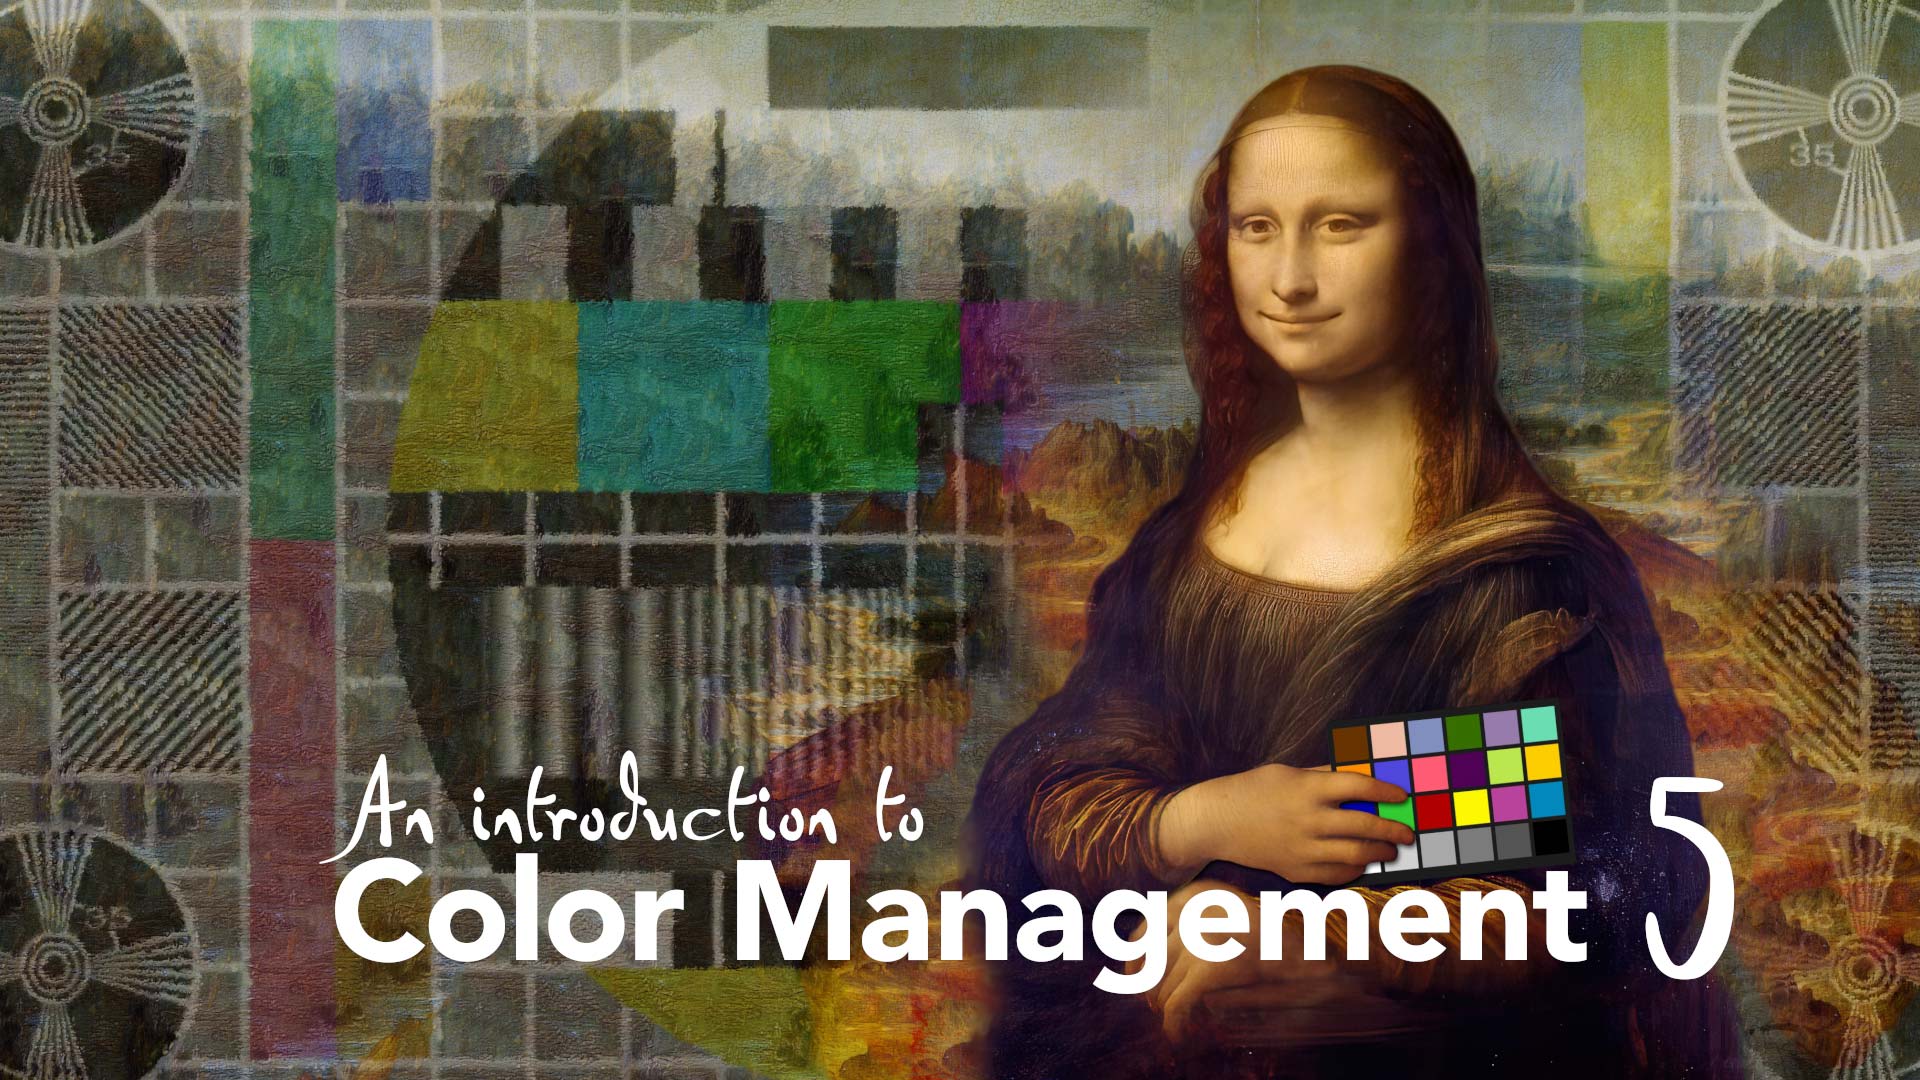 Color Management Part 5: Introducing CIE 1931 44